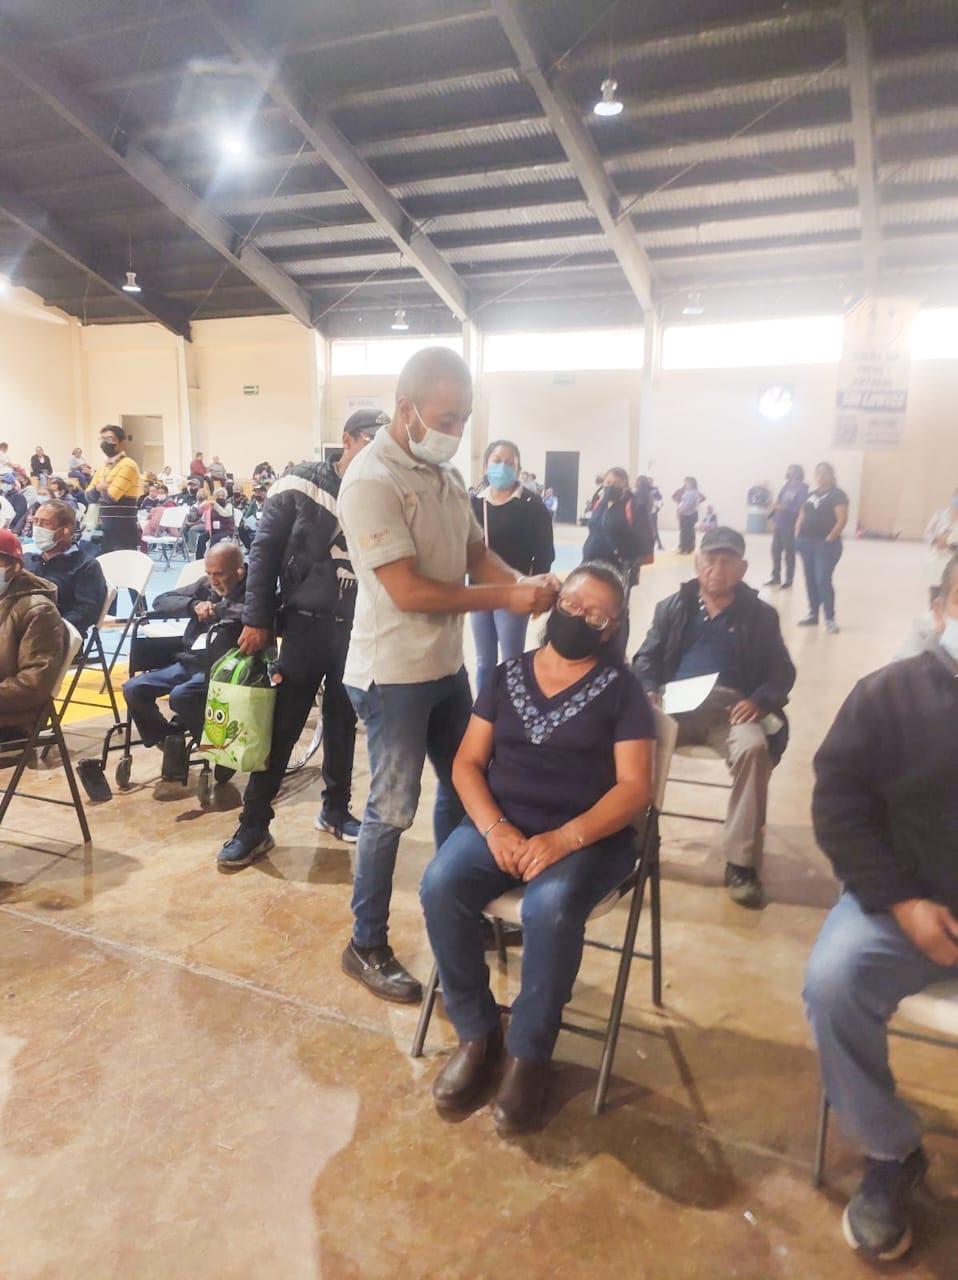 Ángelo Gutiérrez entrega aparatos auditivos a pobladores de Apetatitlán